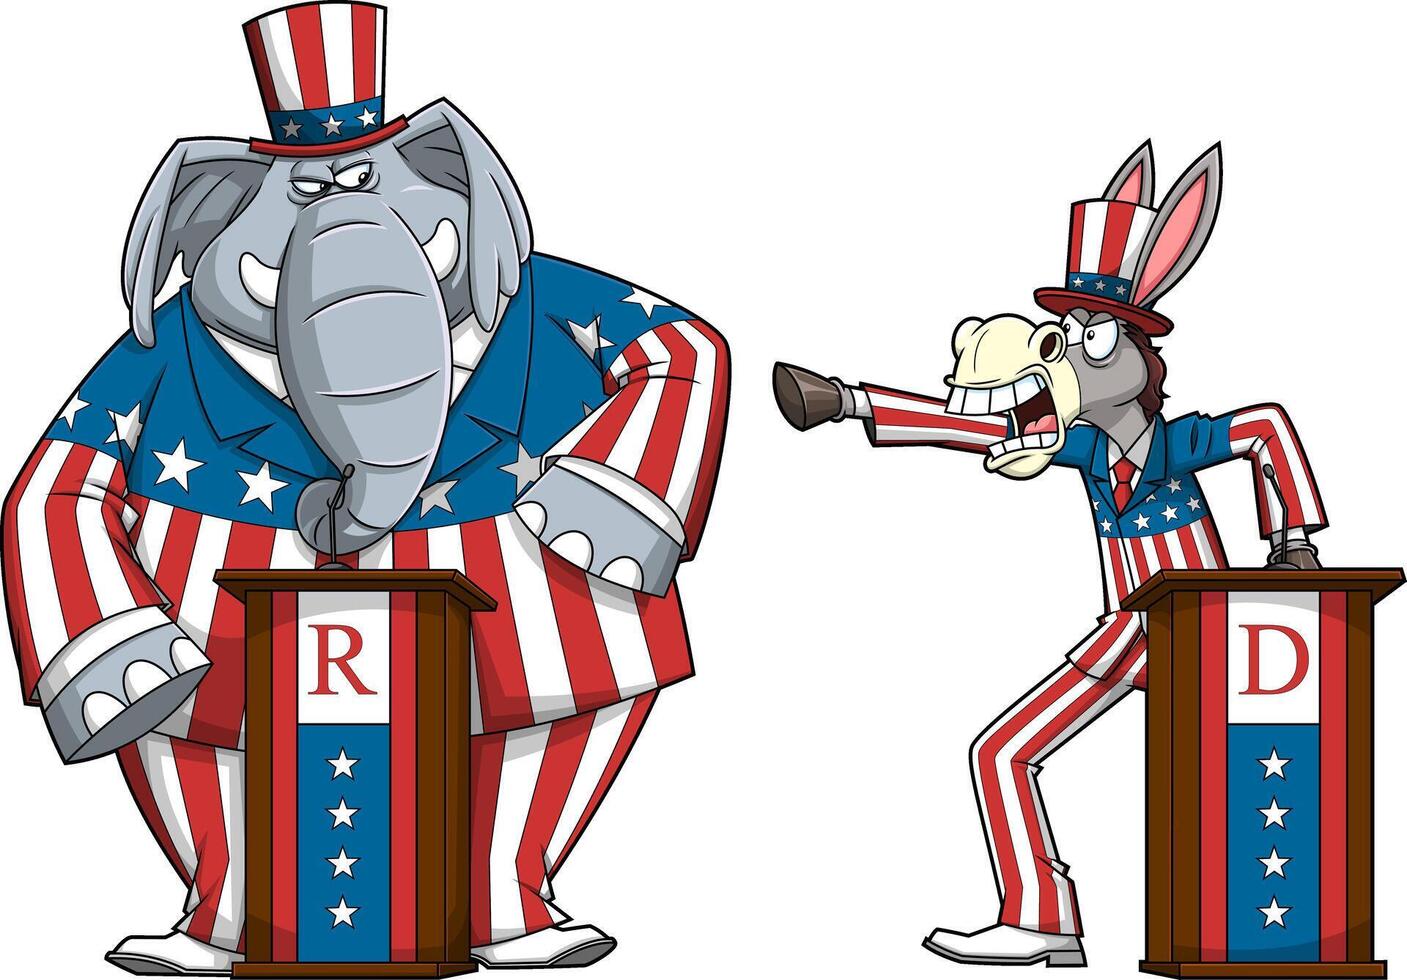 repubblicano elefante vs democratico asino cartone animato personaggi vettore